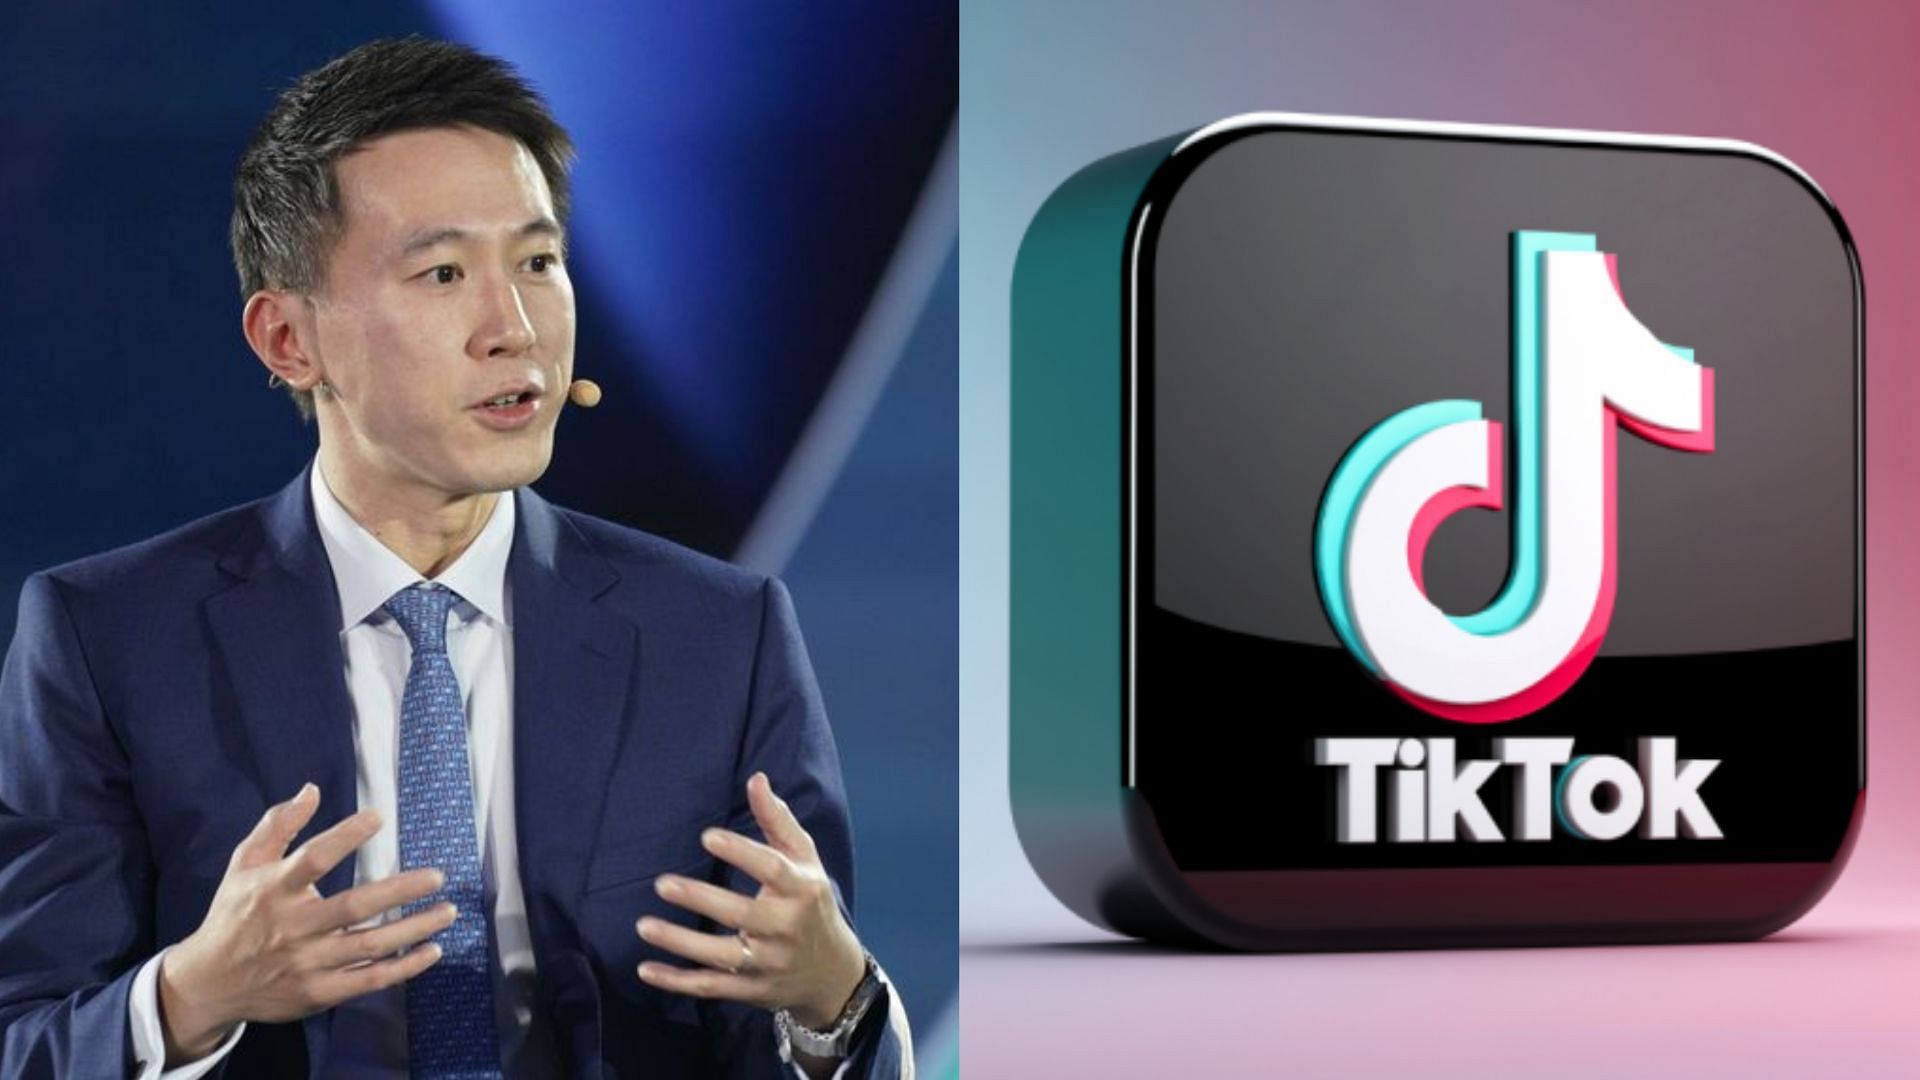 TikTok What is Shou Zi Chew’s net worth? TikTok CEO’s fortune explored